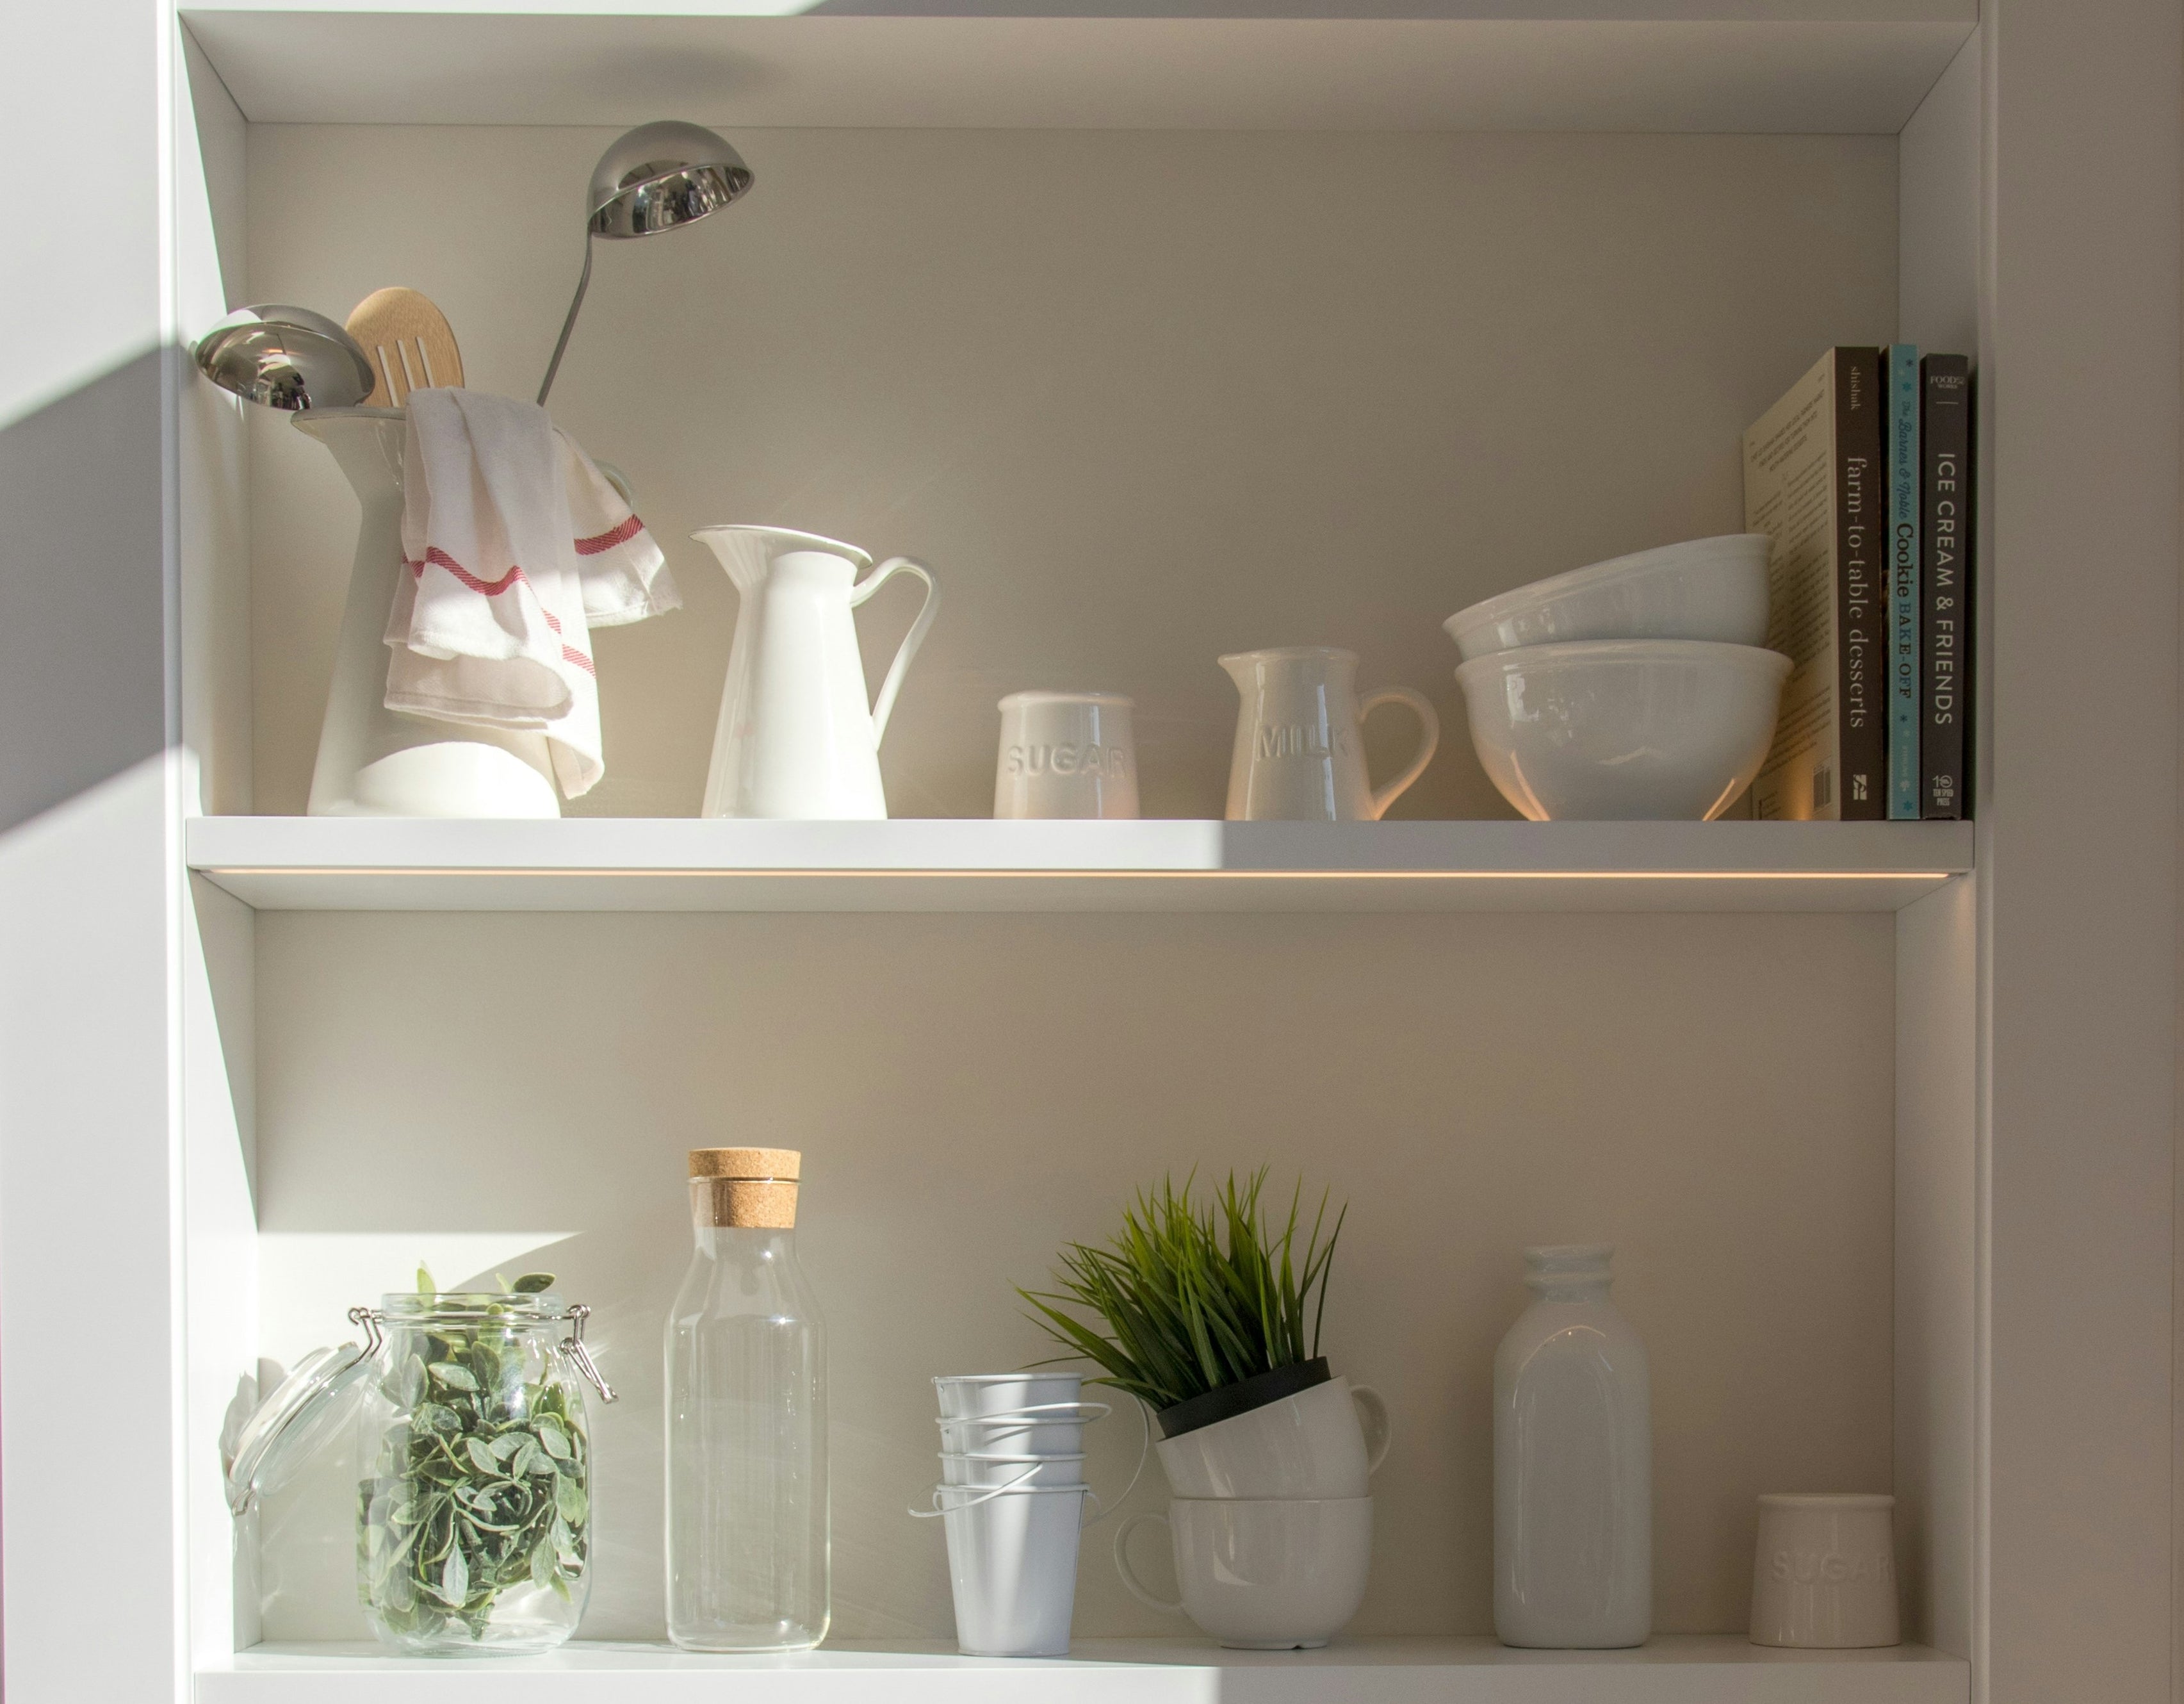 10 Hidden Sources of Microplastics in Your Home - ZERO